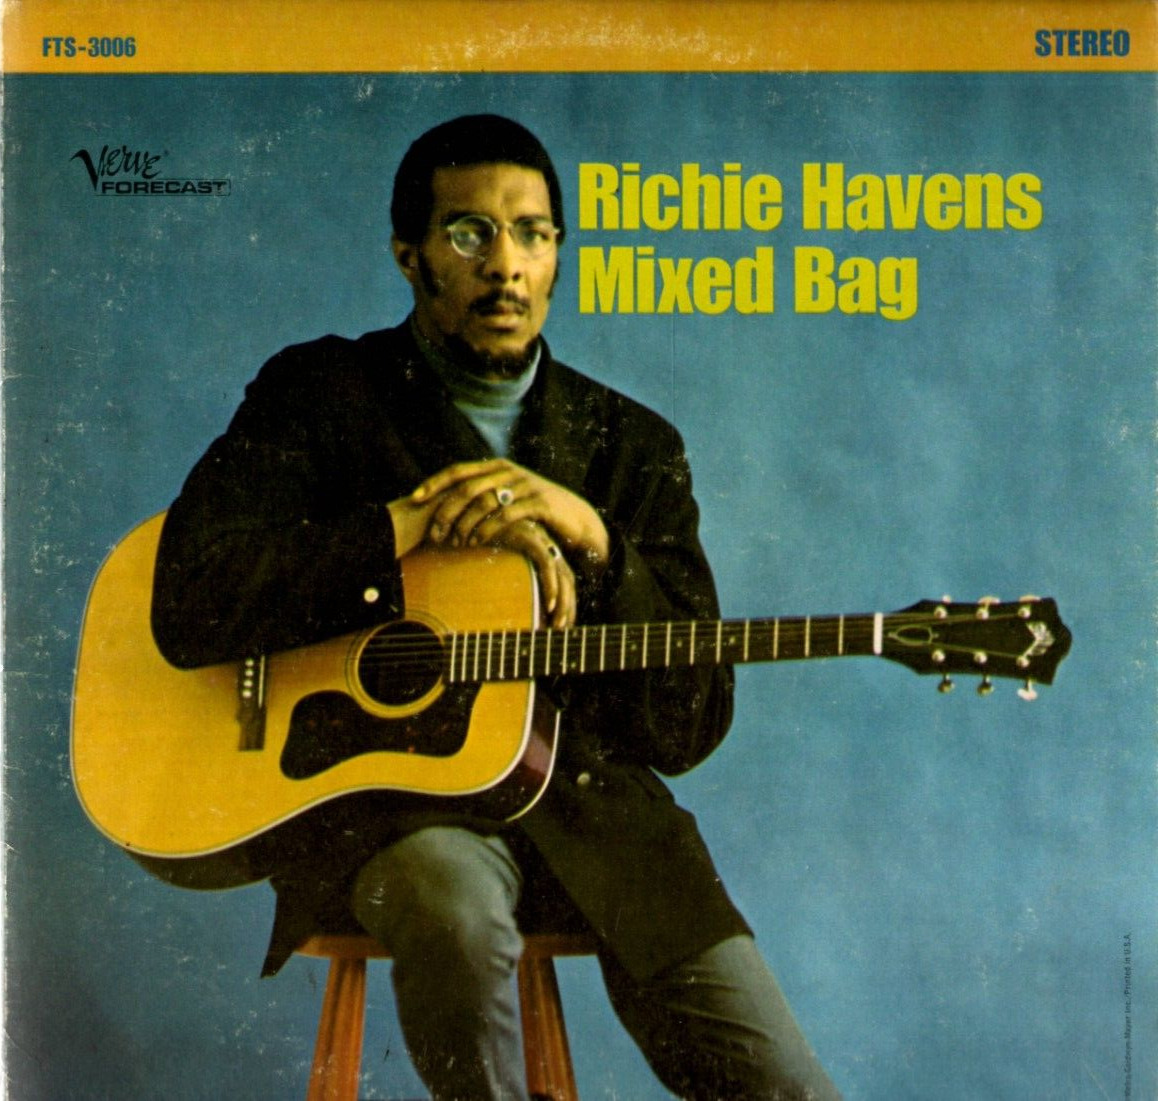 Richie Havens Vinyl LP Verve Forecast Records, 1968, FTS-3006, Mixed Bag ~ VG